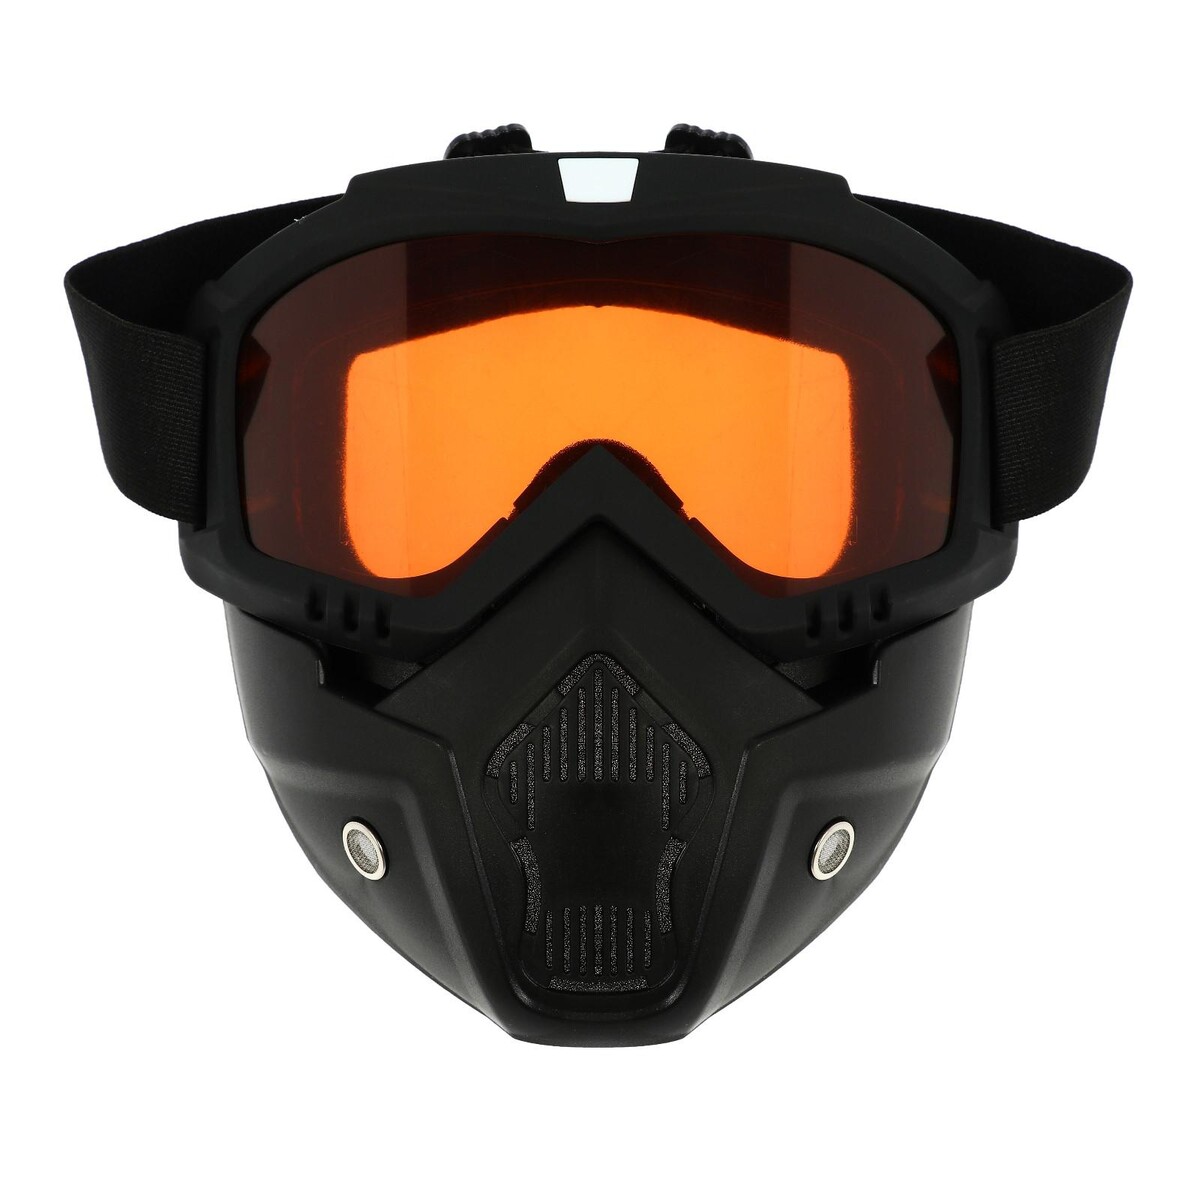 Очки-маска для езды на мототехнике, разборные, стекло оранжевый хром, цвет черный очки маска для езды на мототехнике стекло золотой хром бело красно черные ом 10